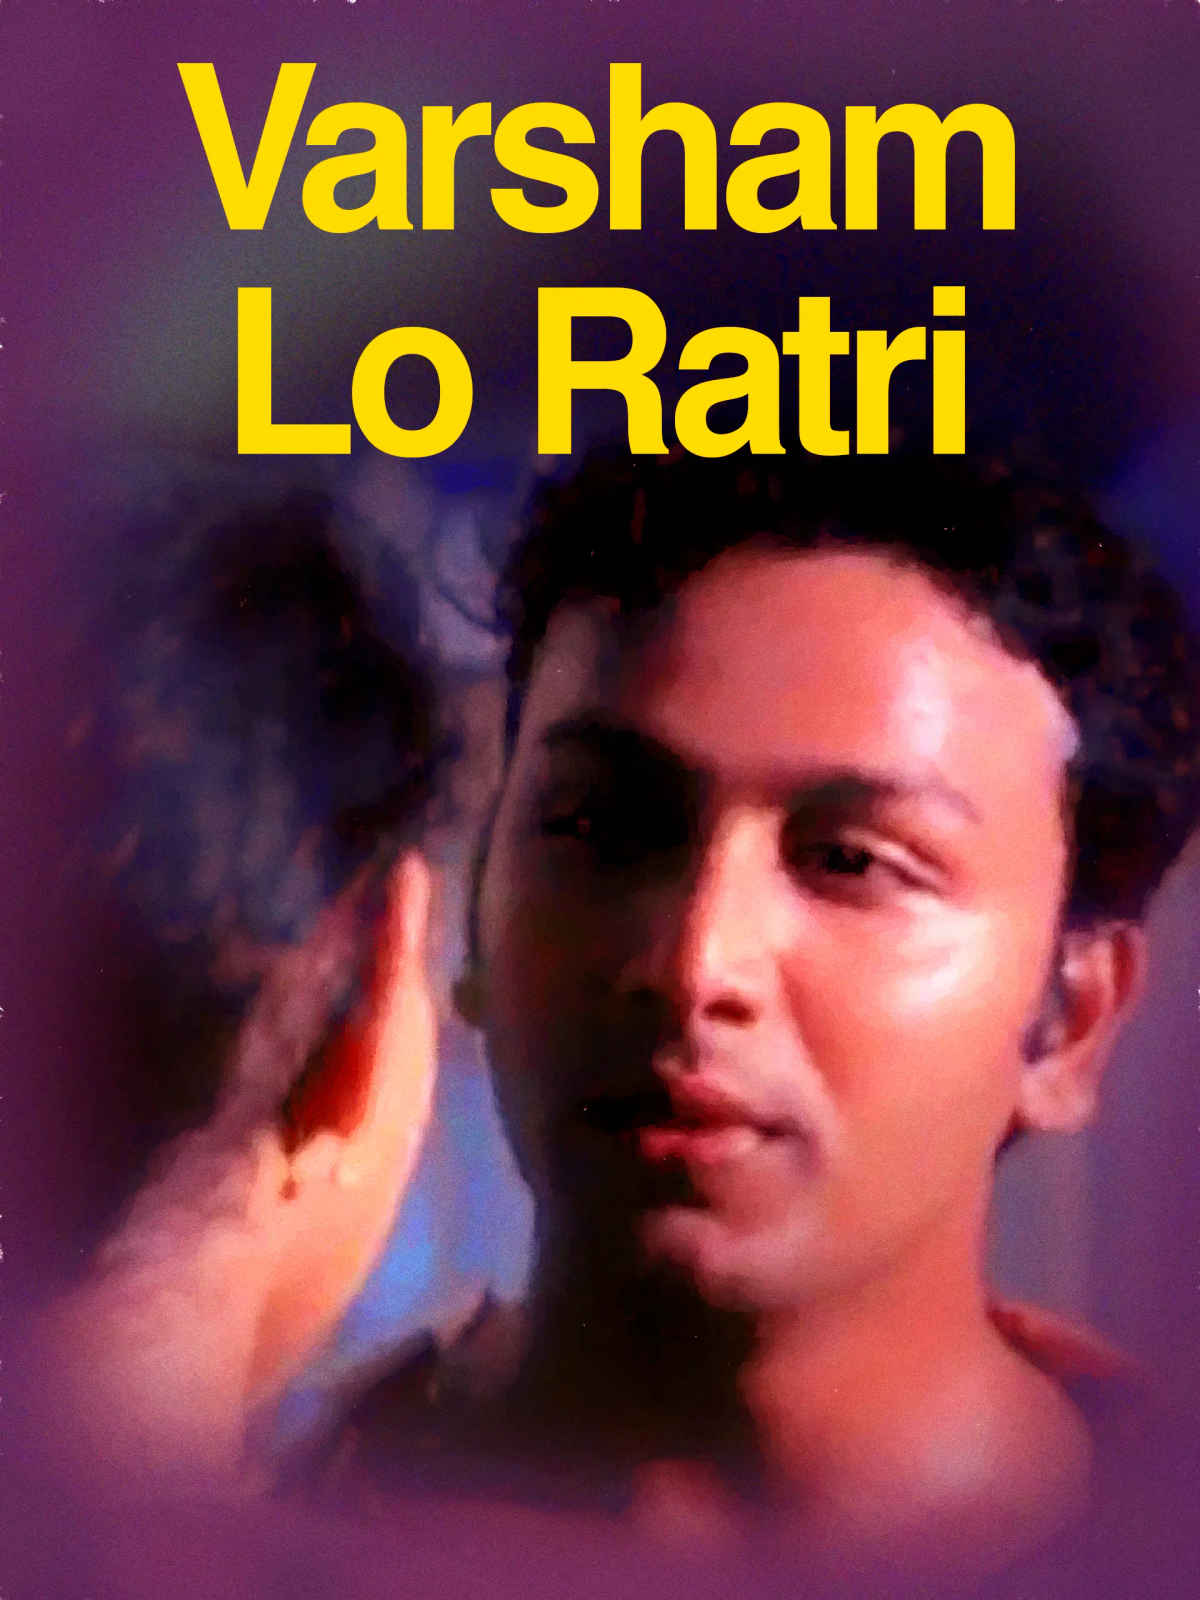 Varsham Lo Ratri